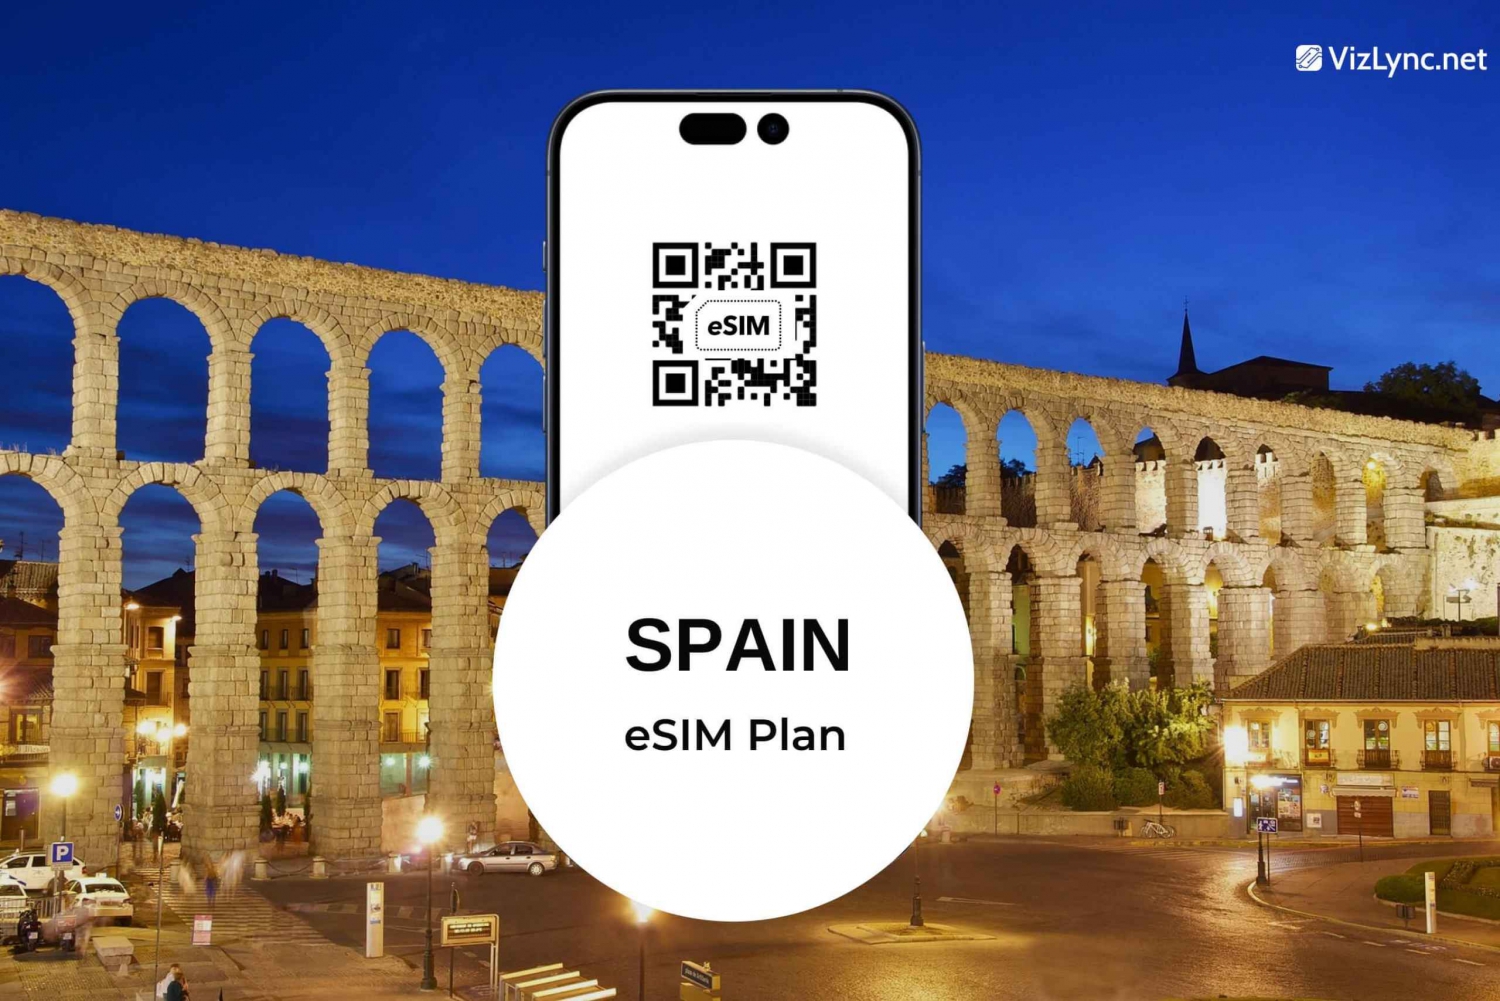 Spanien Travel eSIM Plan mit superschnellen mobilen Daten